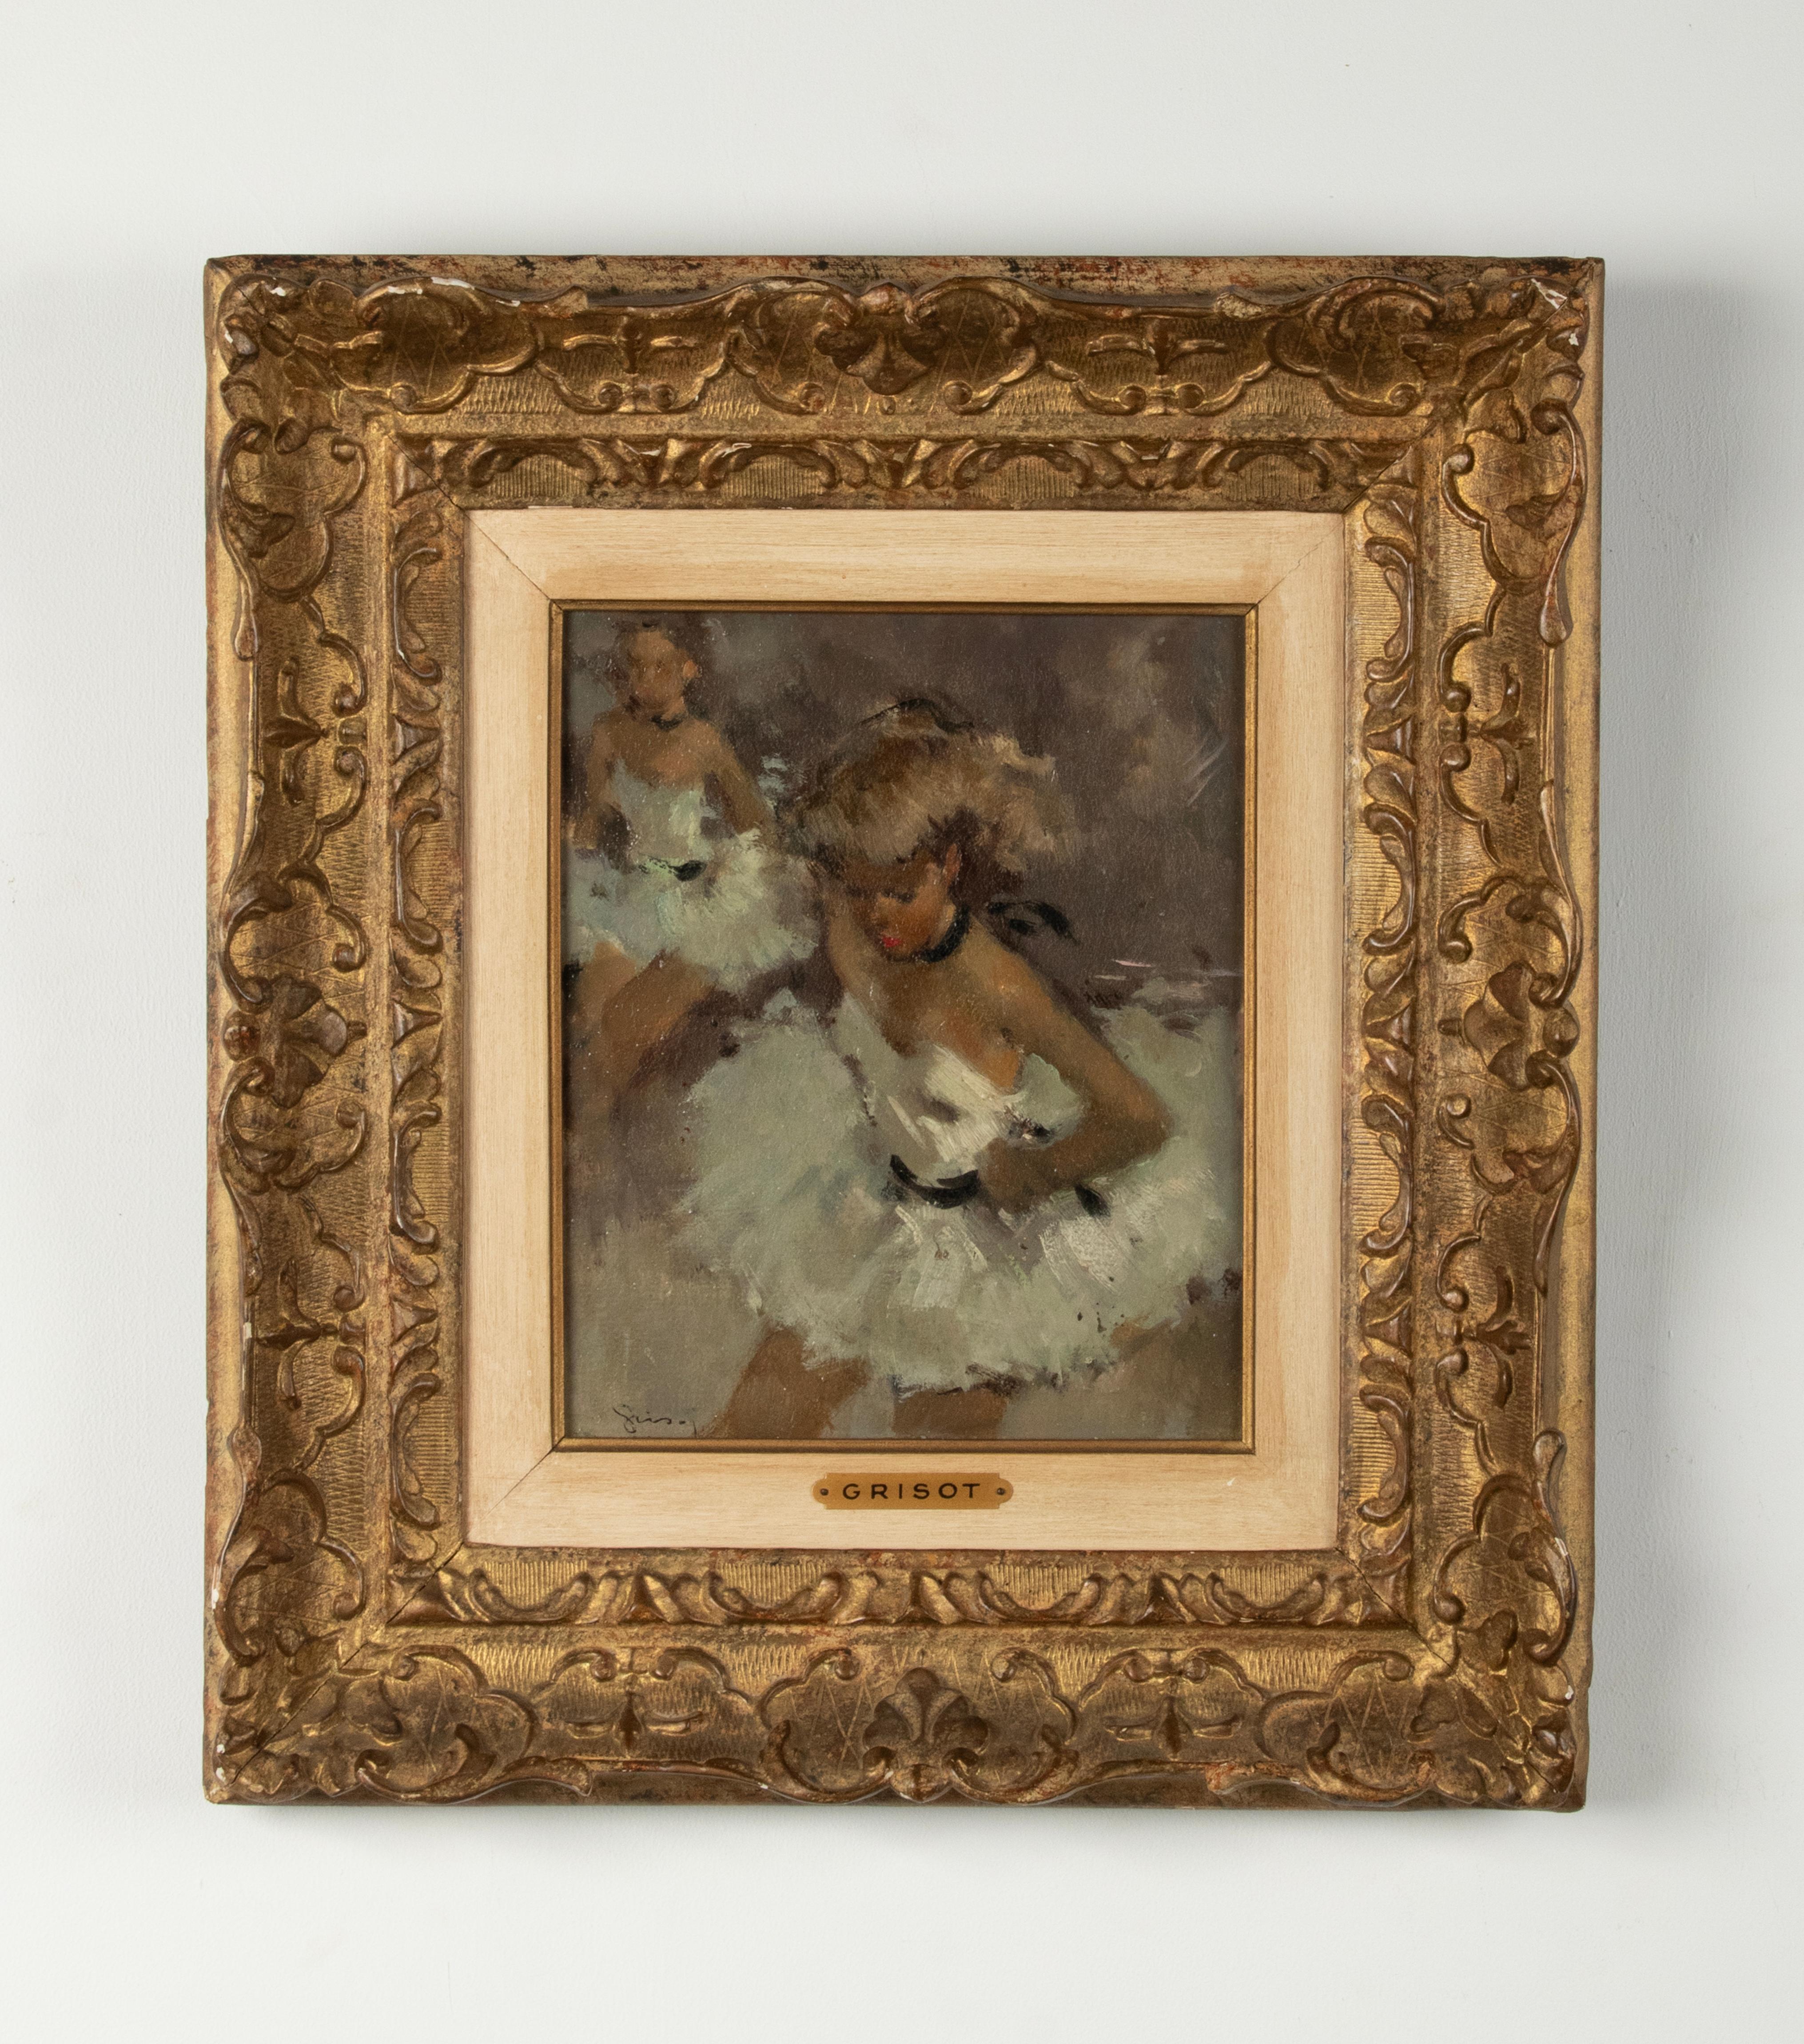 Une belle peinture vintage d'une danseuse de ballet, réalisée par l'artiste français Pierre Grisot. 
Peinture à l'huile sur panneau dur, encadrée dans un cadre classique. 
Dimensions du cadre : 47 x 42 cm
Dimensions peinture : 25 x 20 cm
Expédition